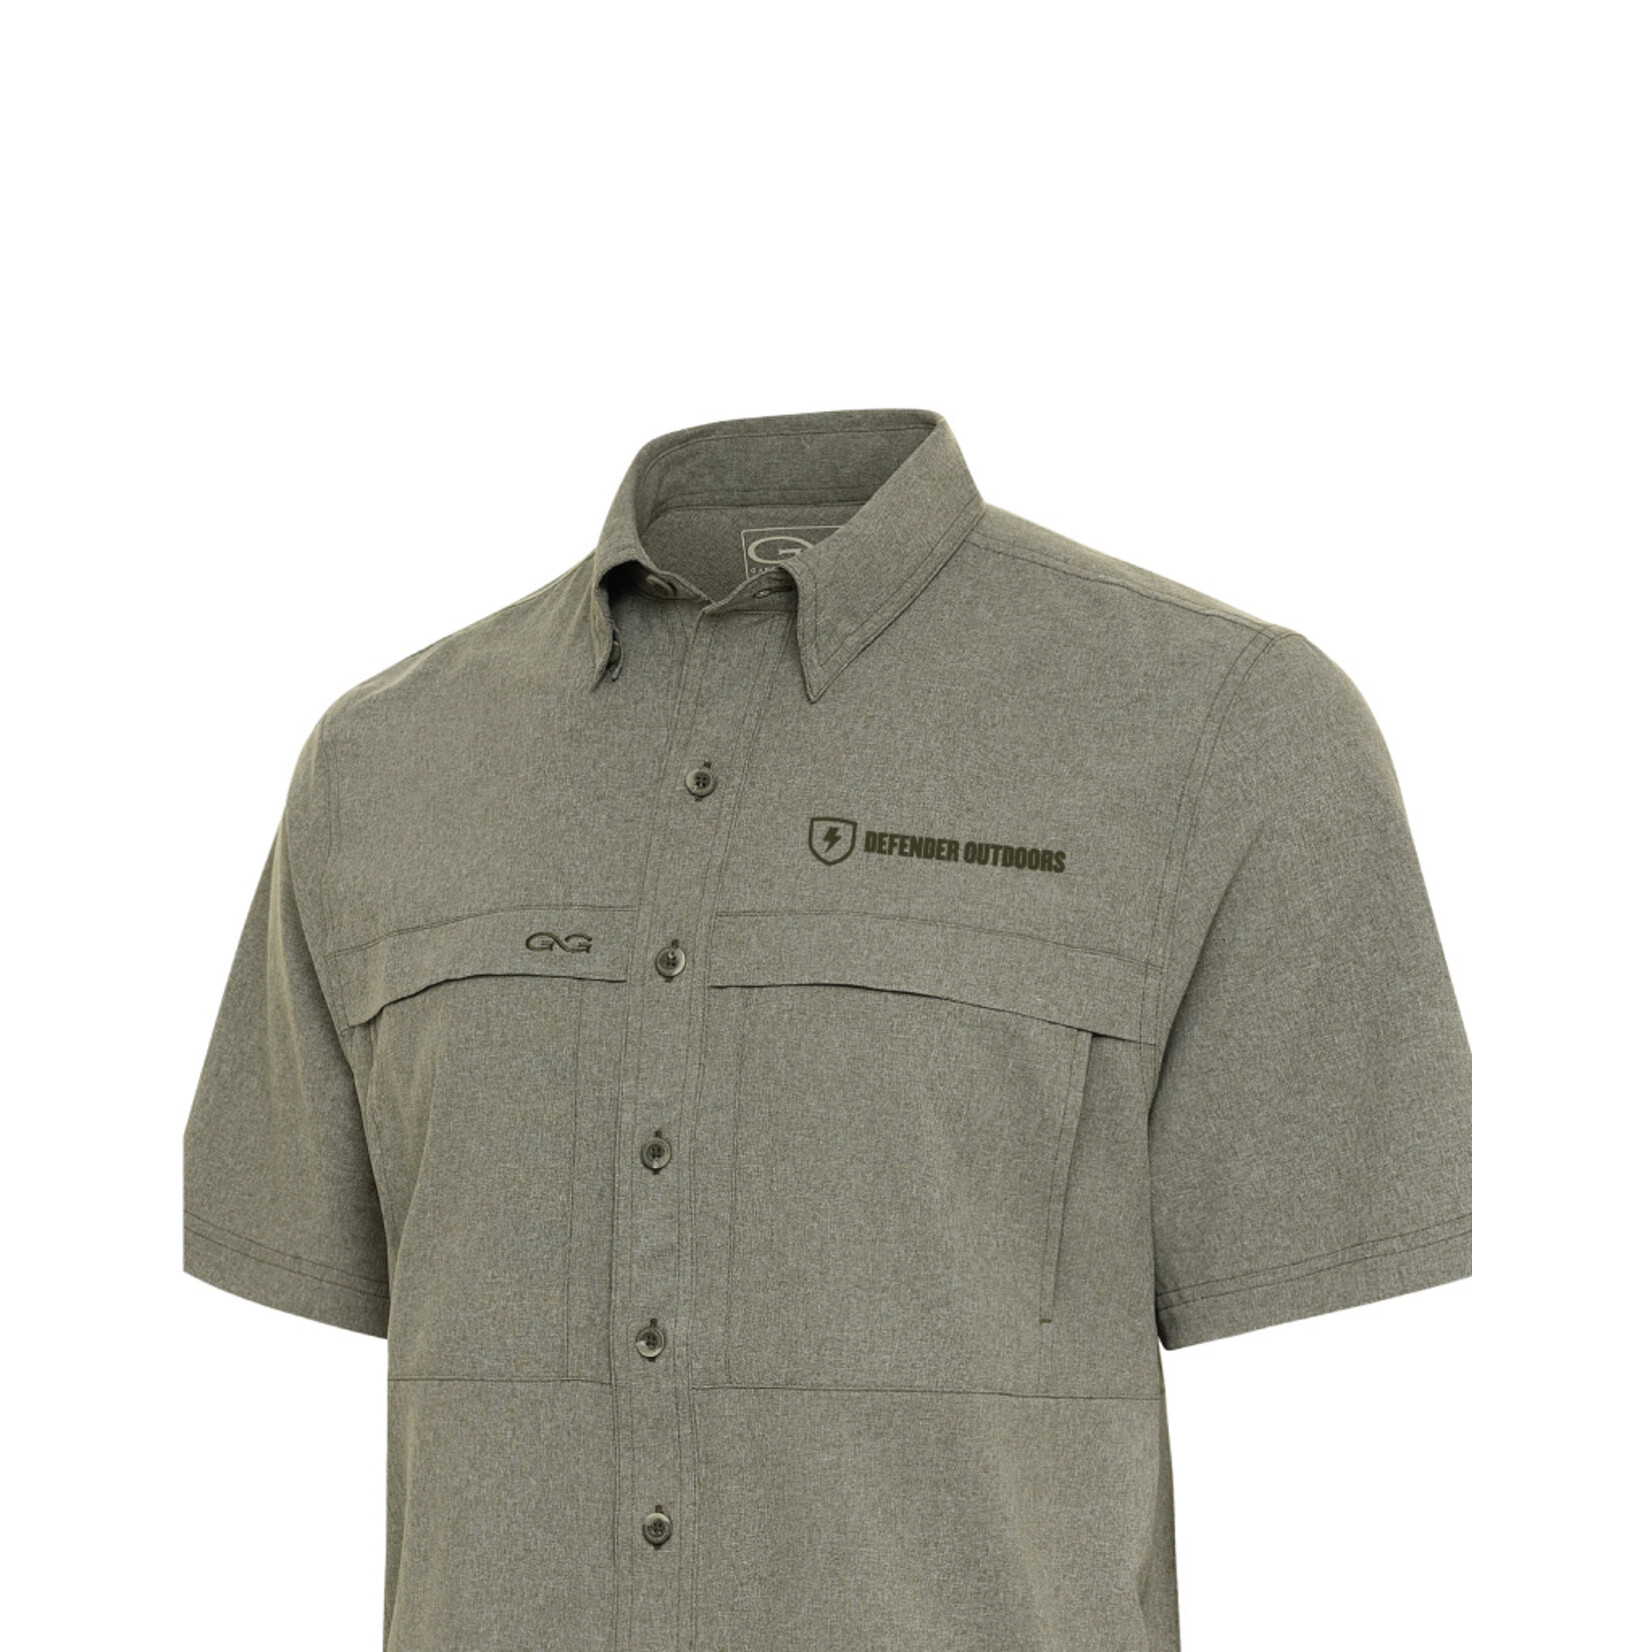 Gameguard Outdoors Microtek Shirt